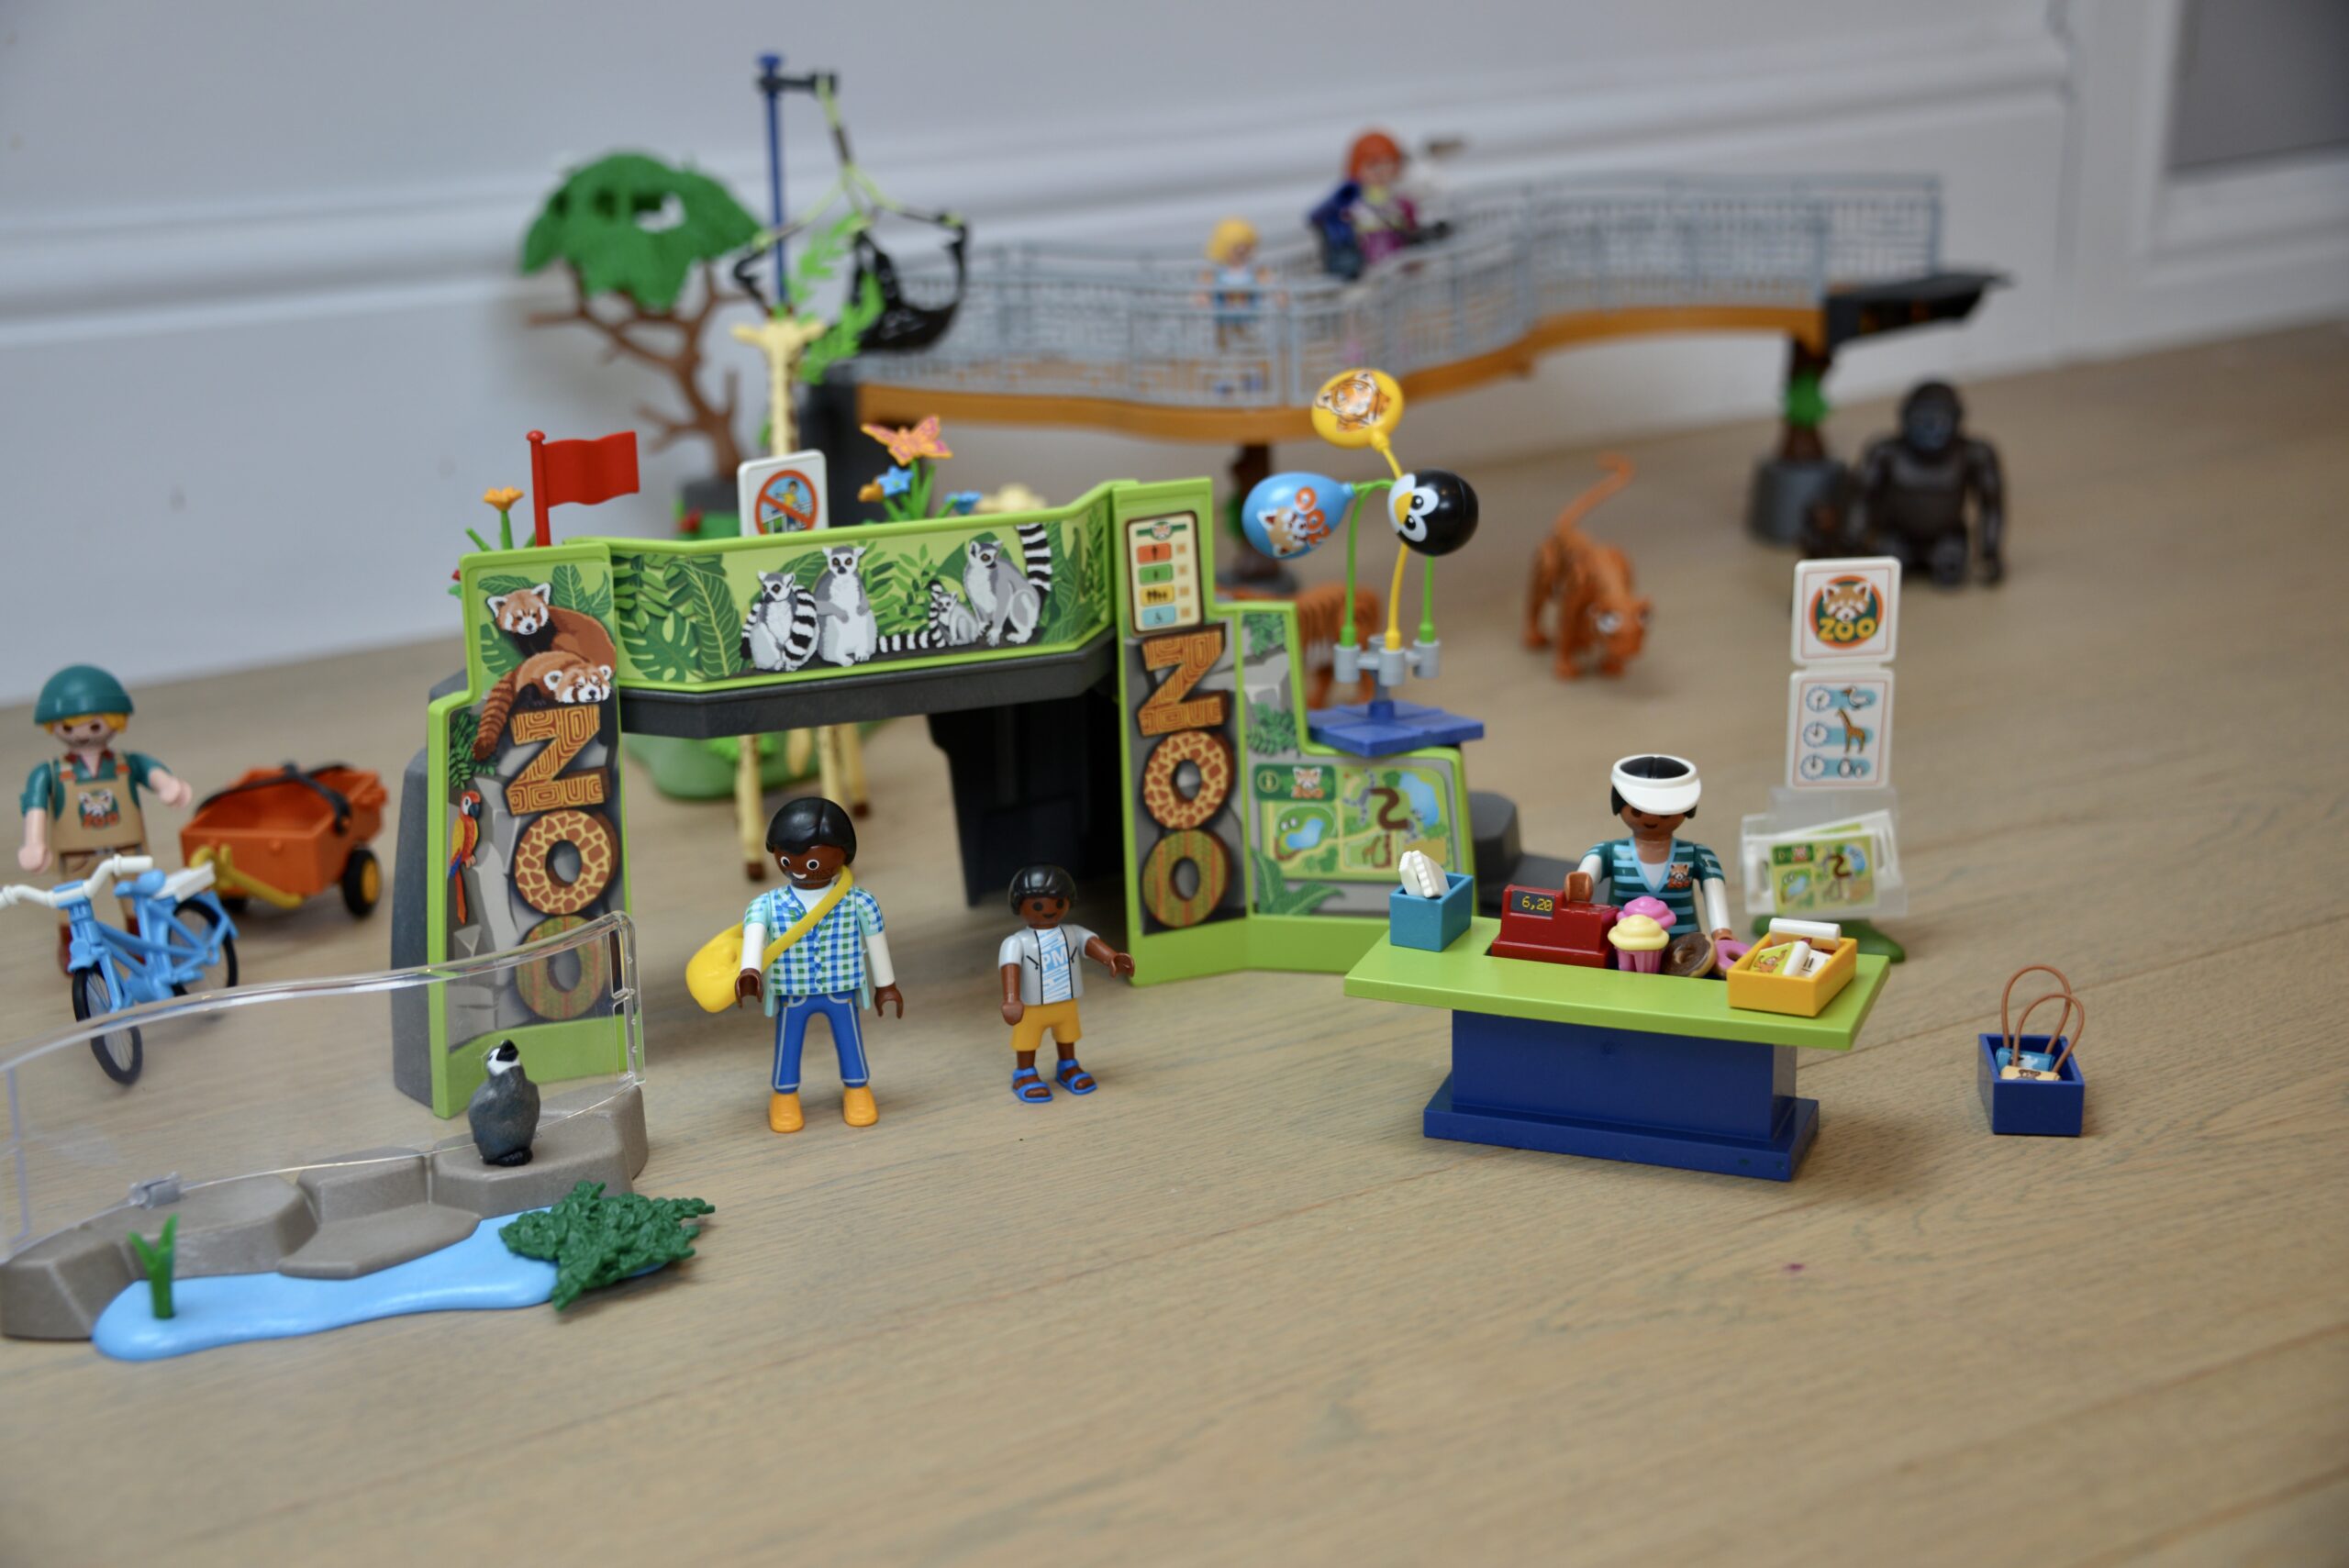 Playmobil - Family Fun Zoo Gift Set